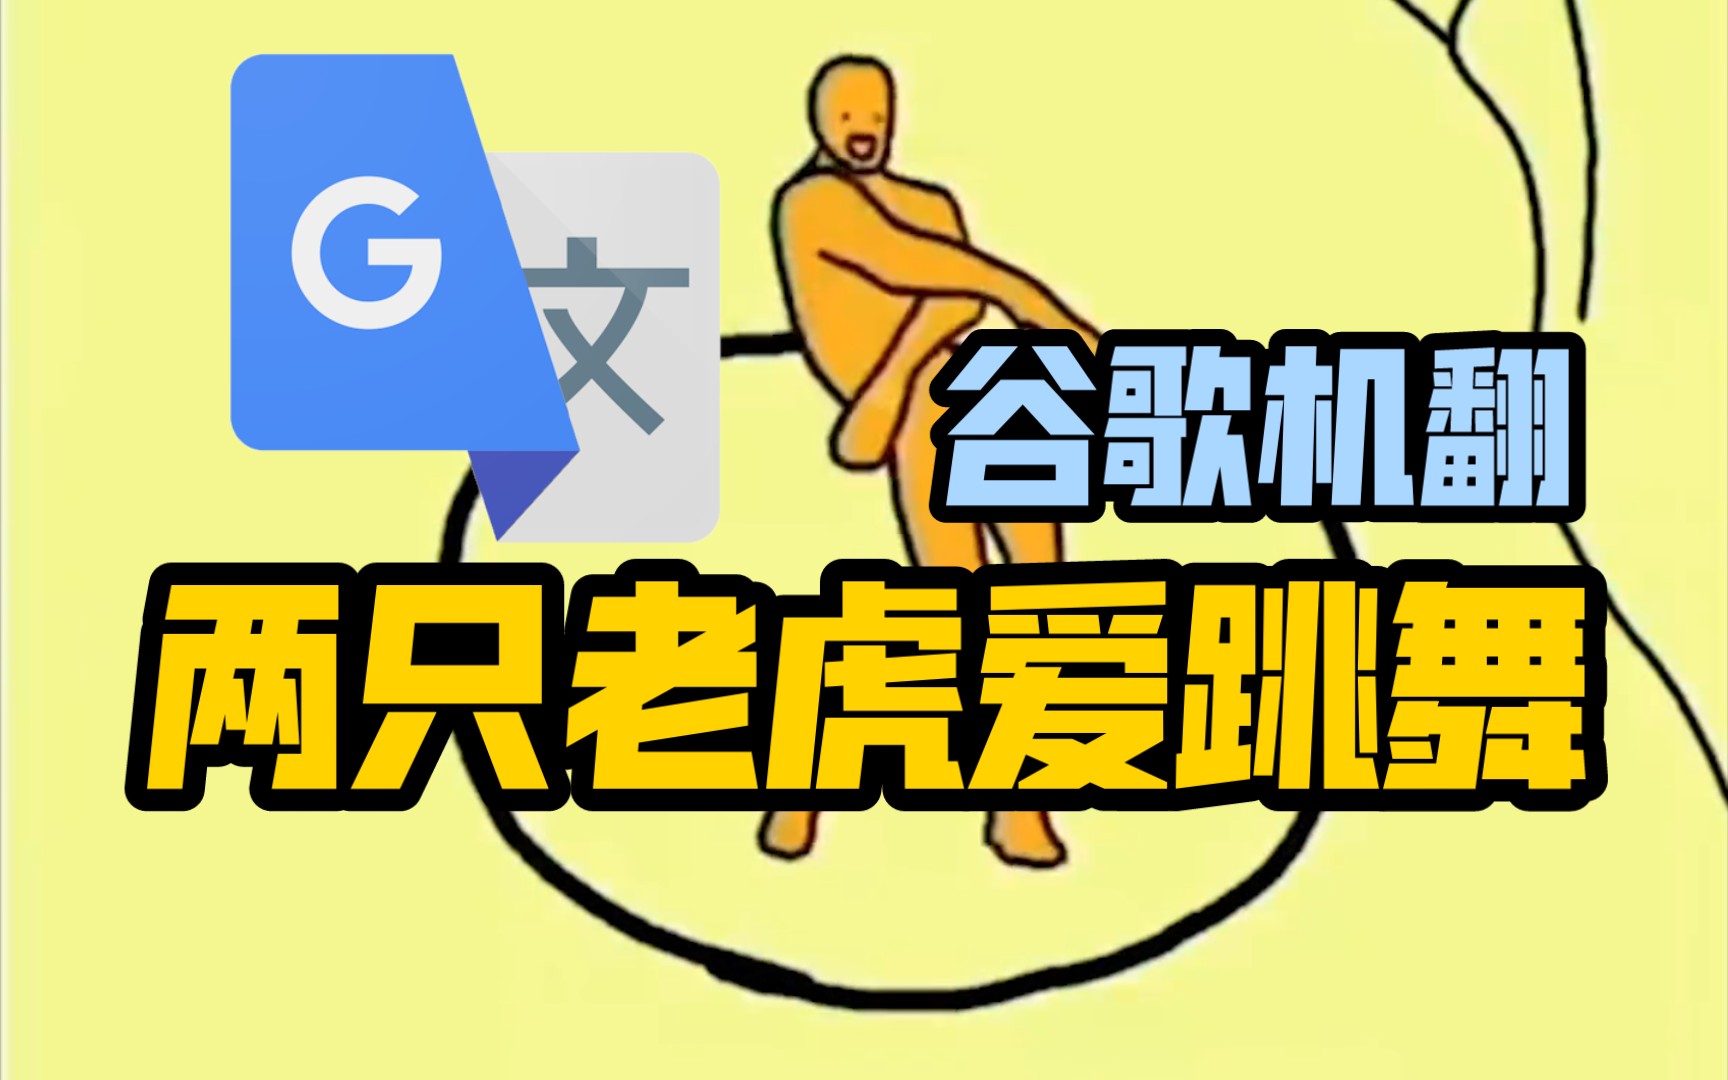 谷歌翻译20遍【两只老虎爱跳舞】翻唱